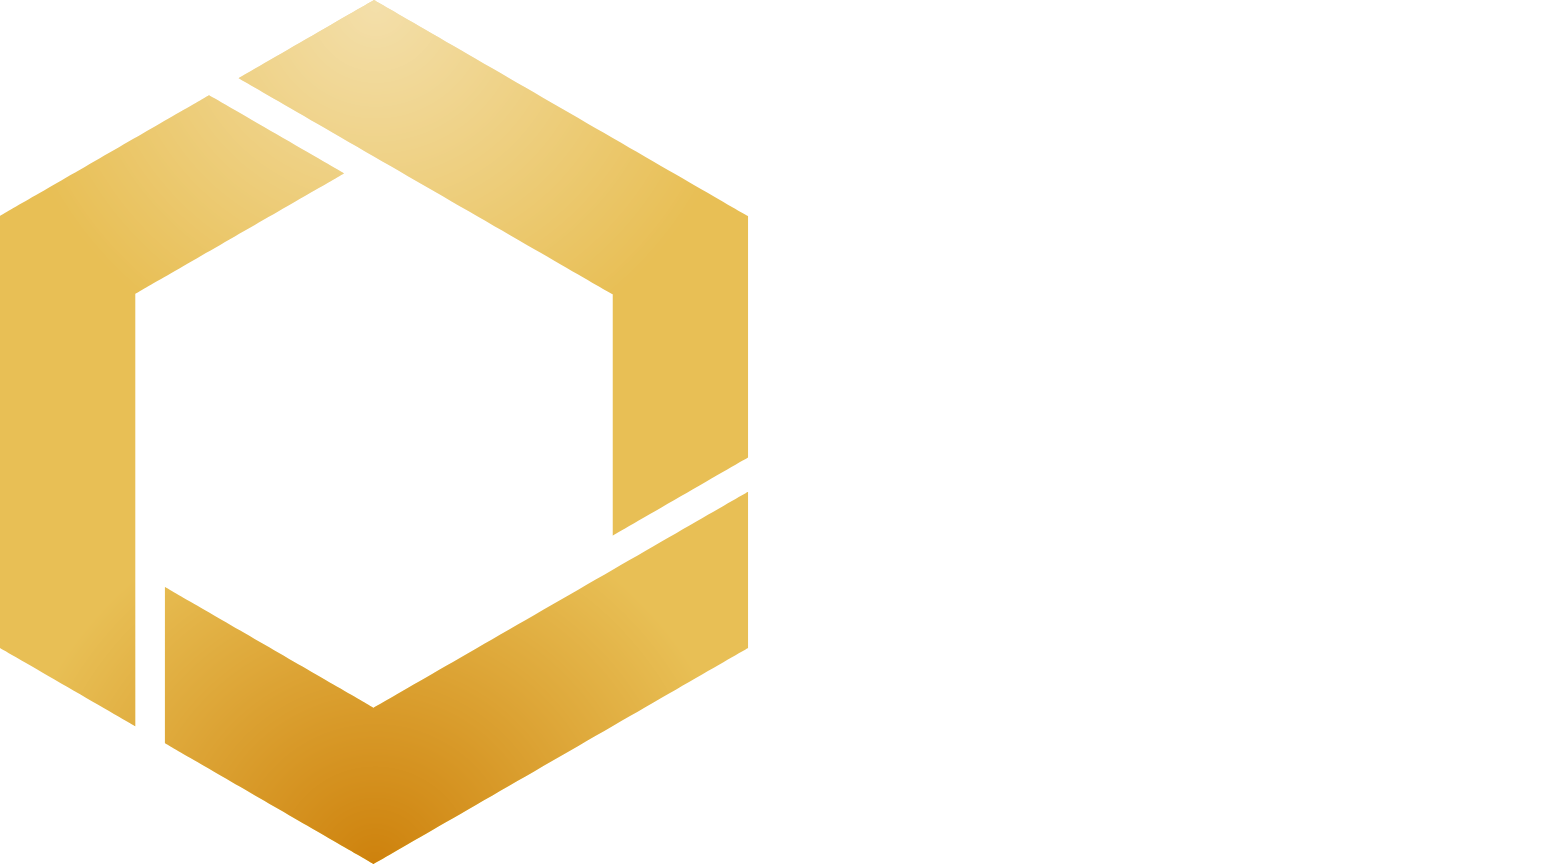 Orosur Mining logo grand pour les fonds sombres (PNG transparent)